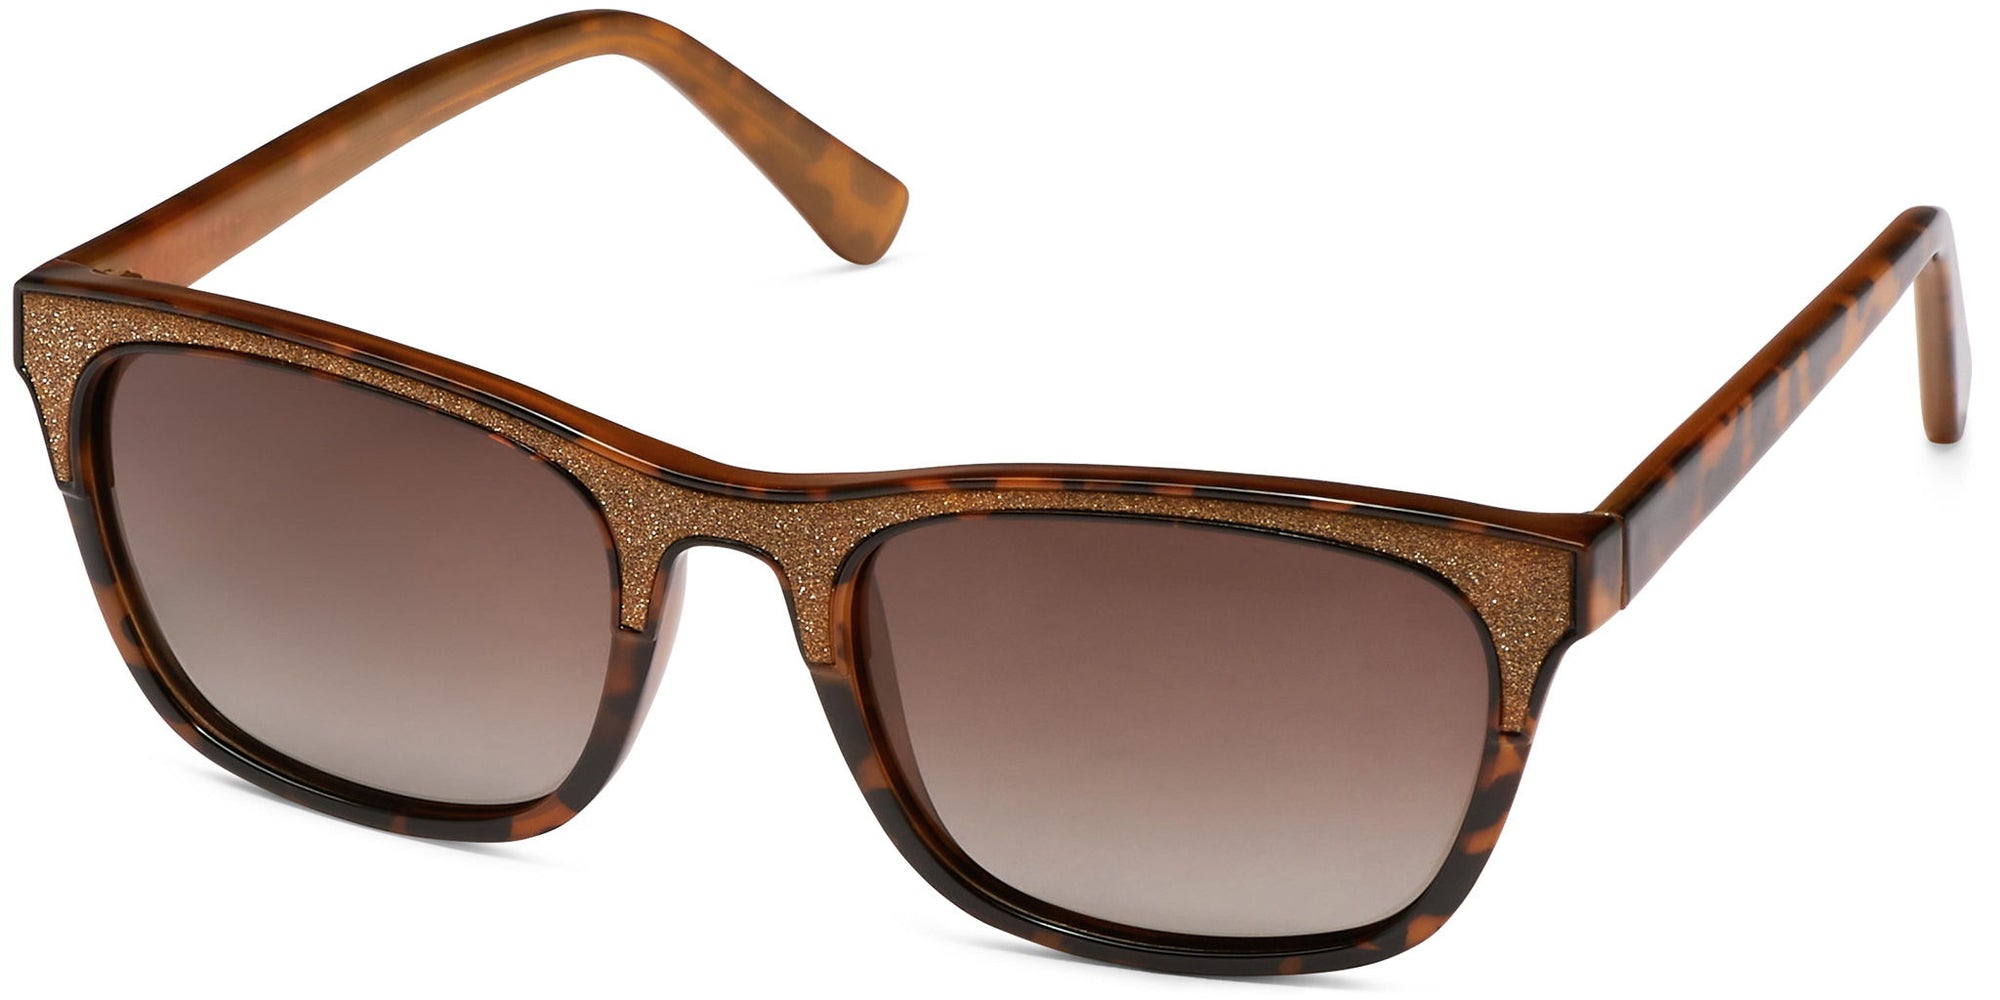 Gabriella - Brown/Brown Lens - Sunglasses